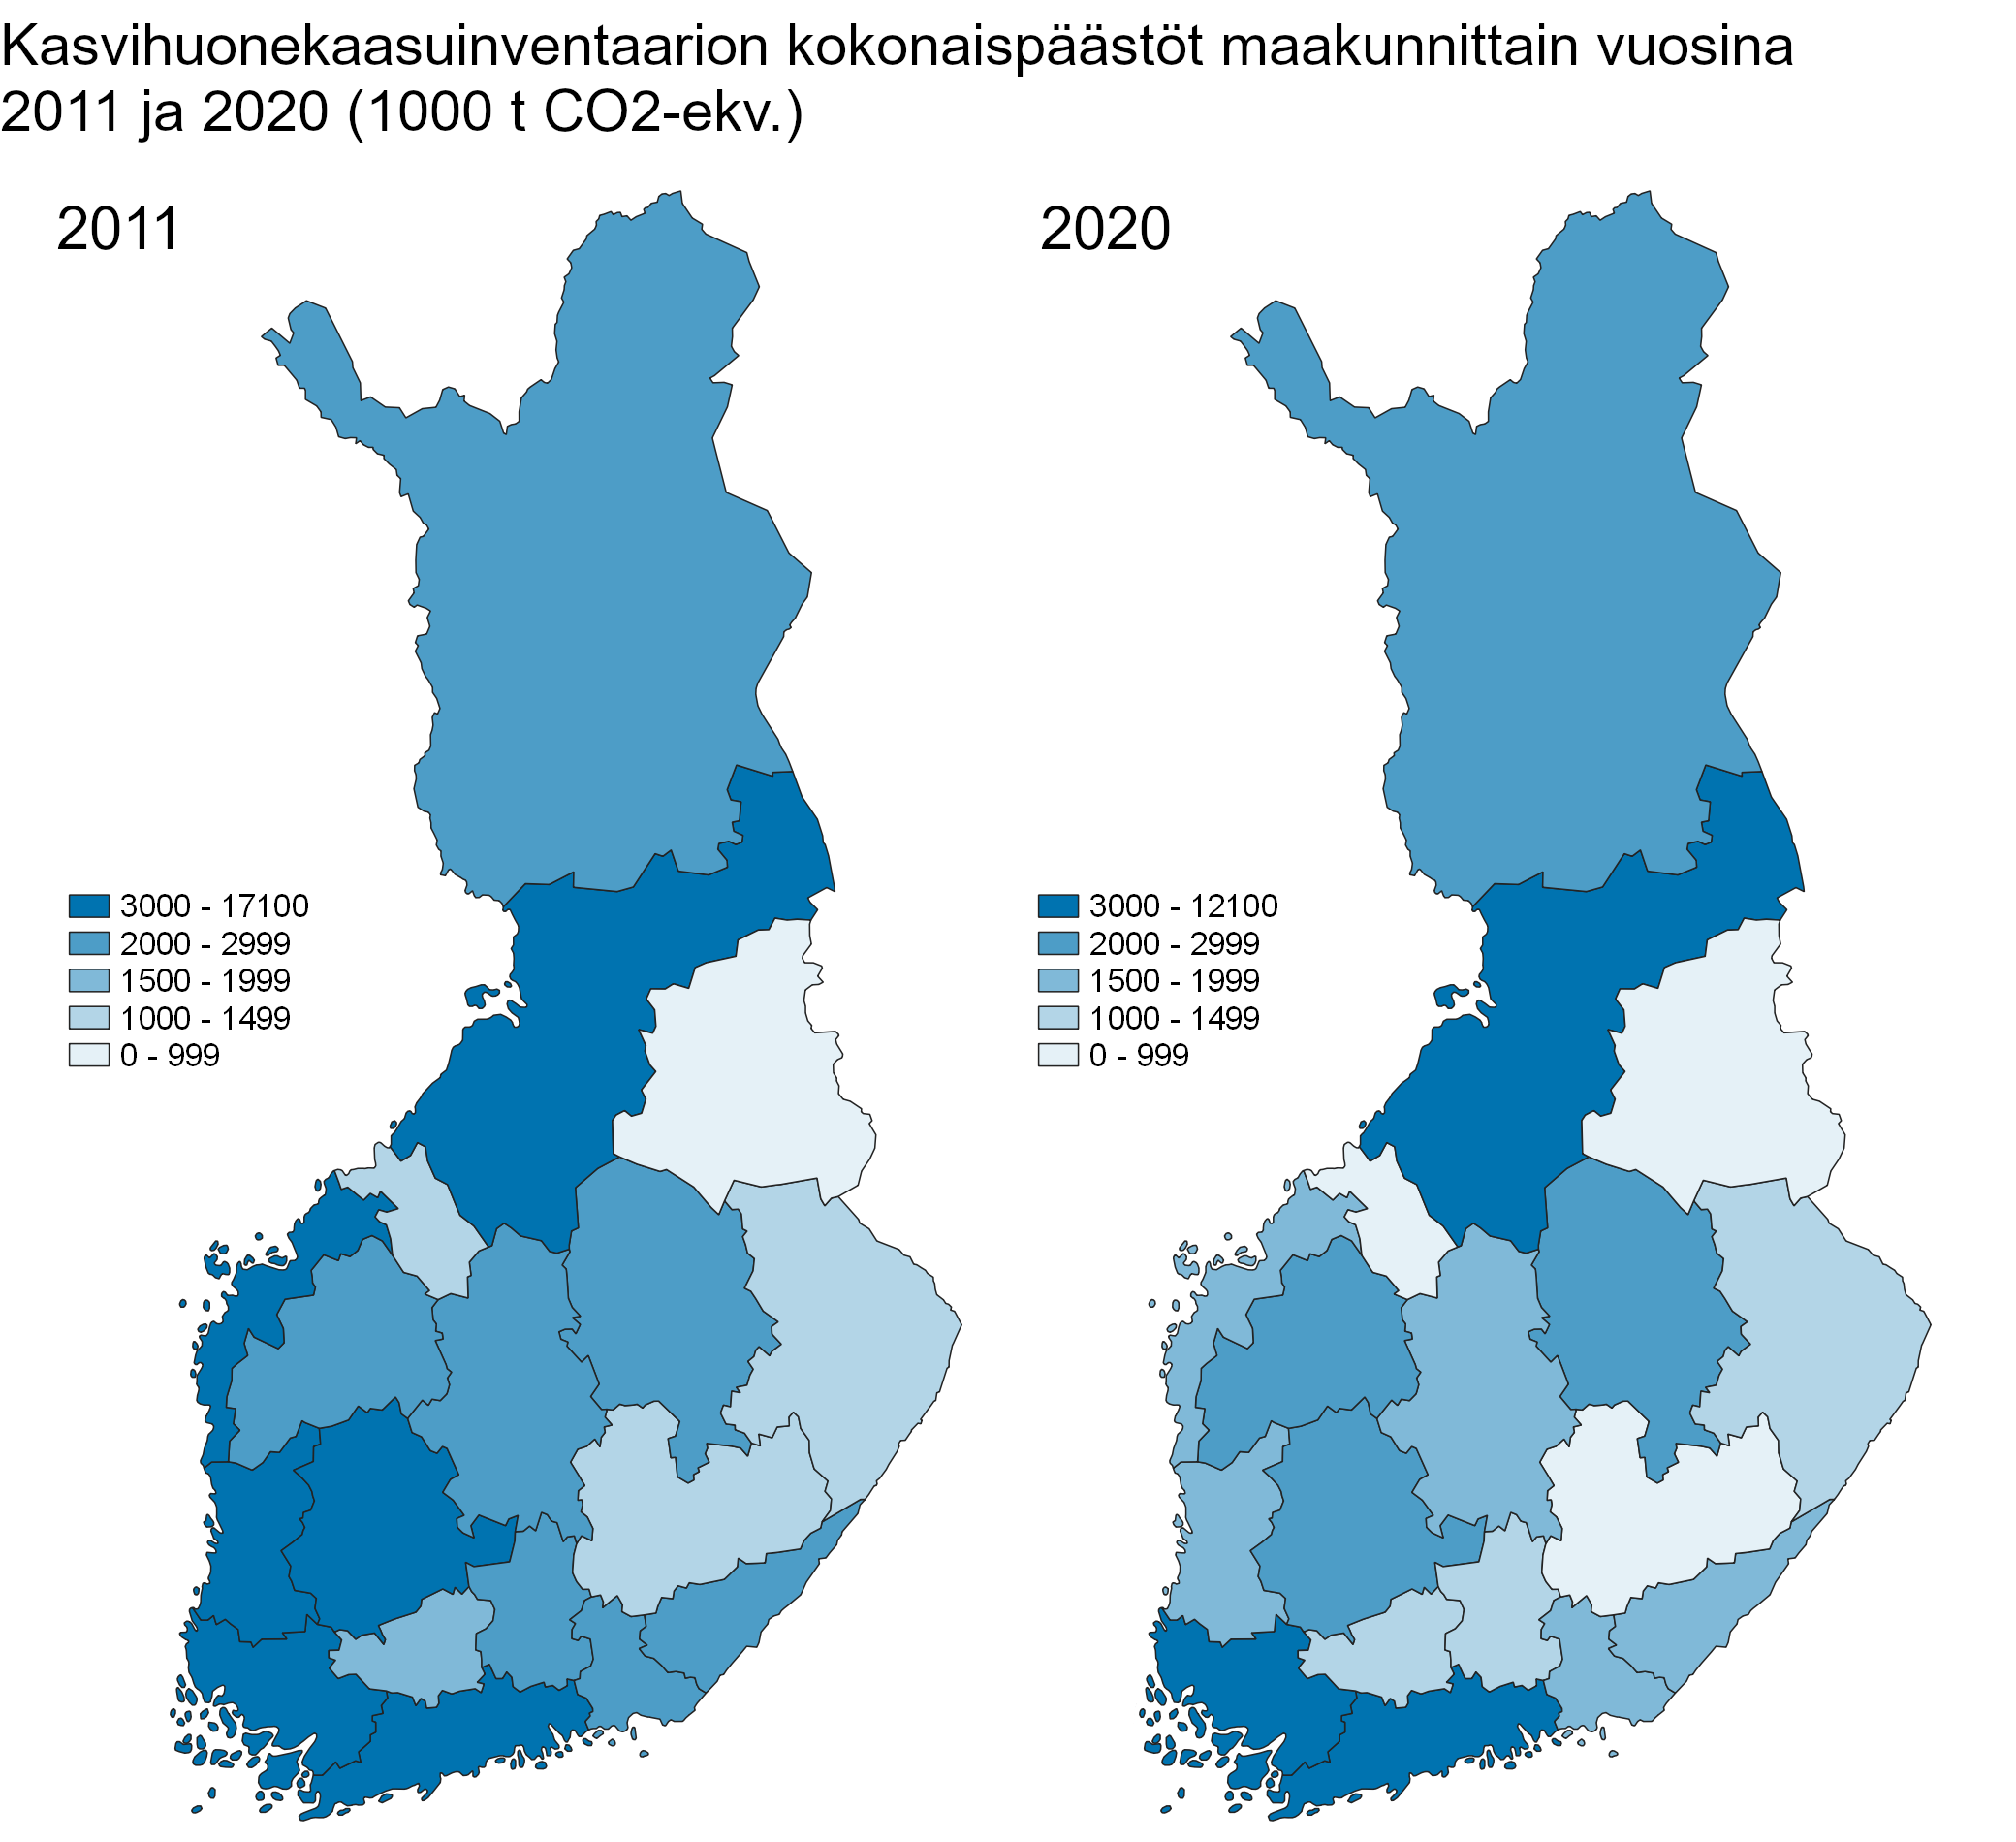 Suomen maakuntien kokonaiskasvihuonekaasupäästöt vuosina 2011 ja 2020 on esitetty kahtena karttakuvana. Kuntien välinen vaihtelu päästöissä on suurta.